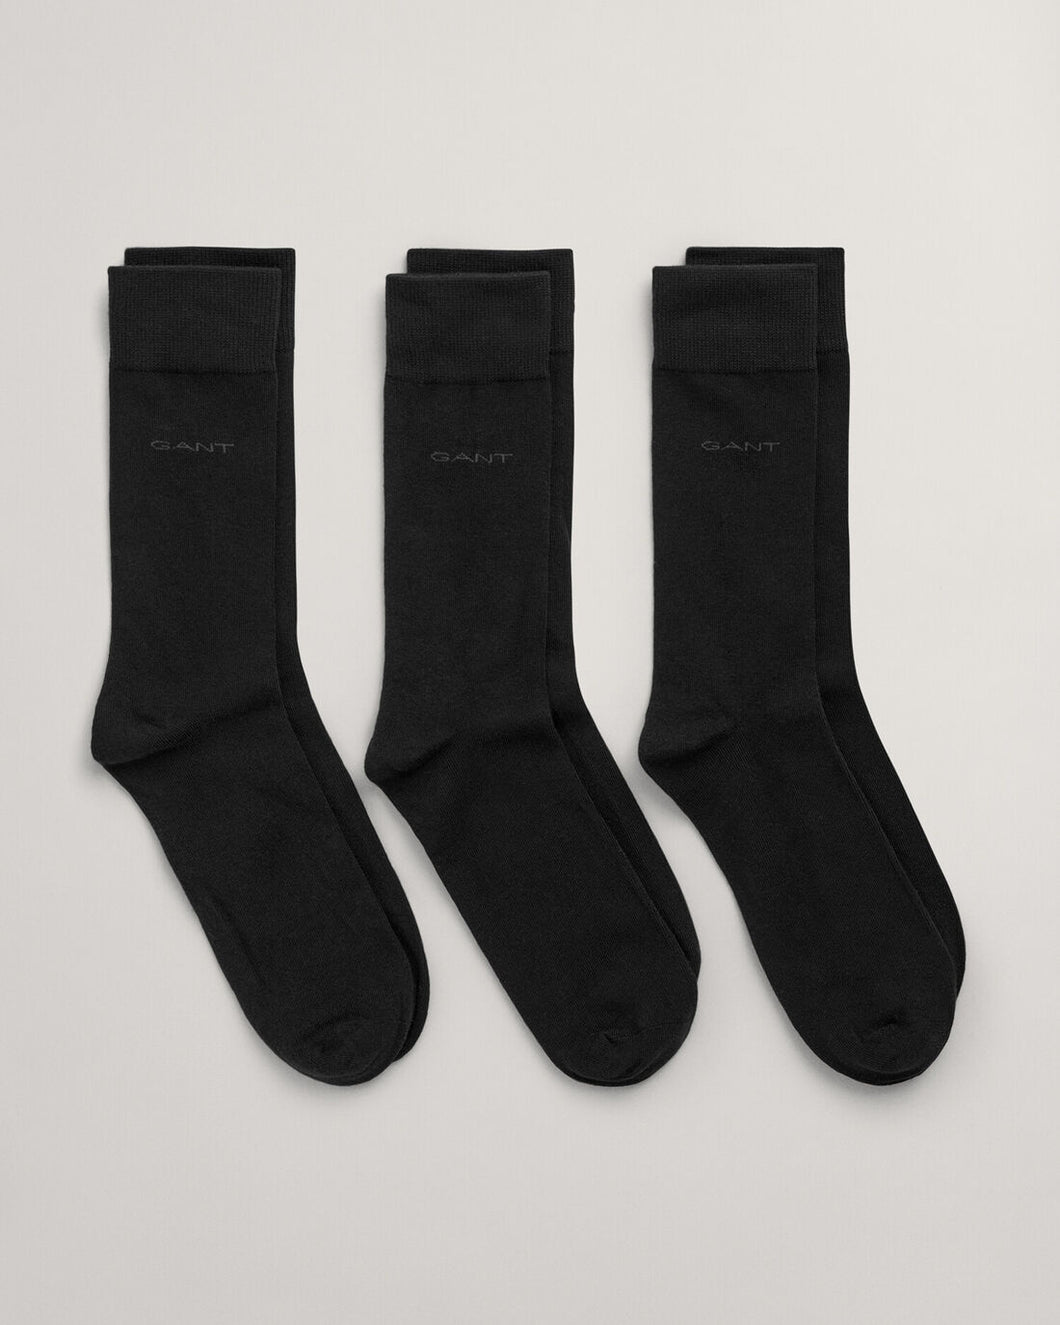 GANT - 3 Pack Soft Cotton Black Socks